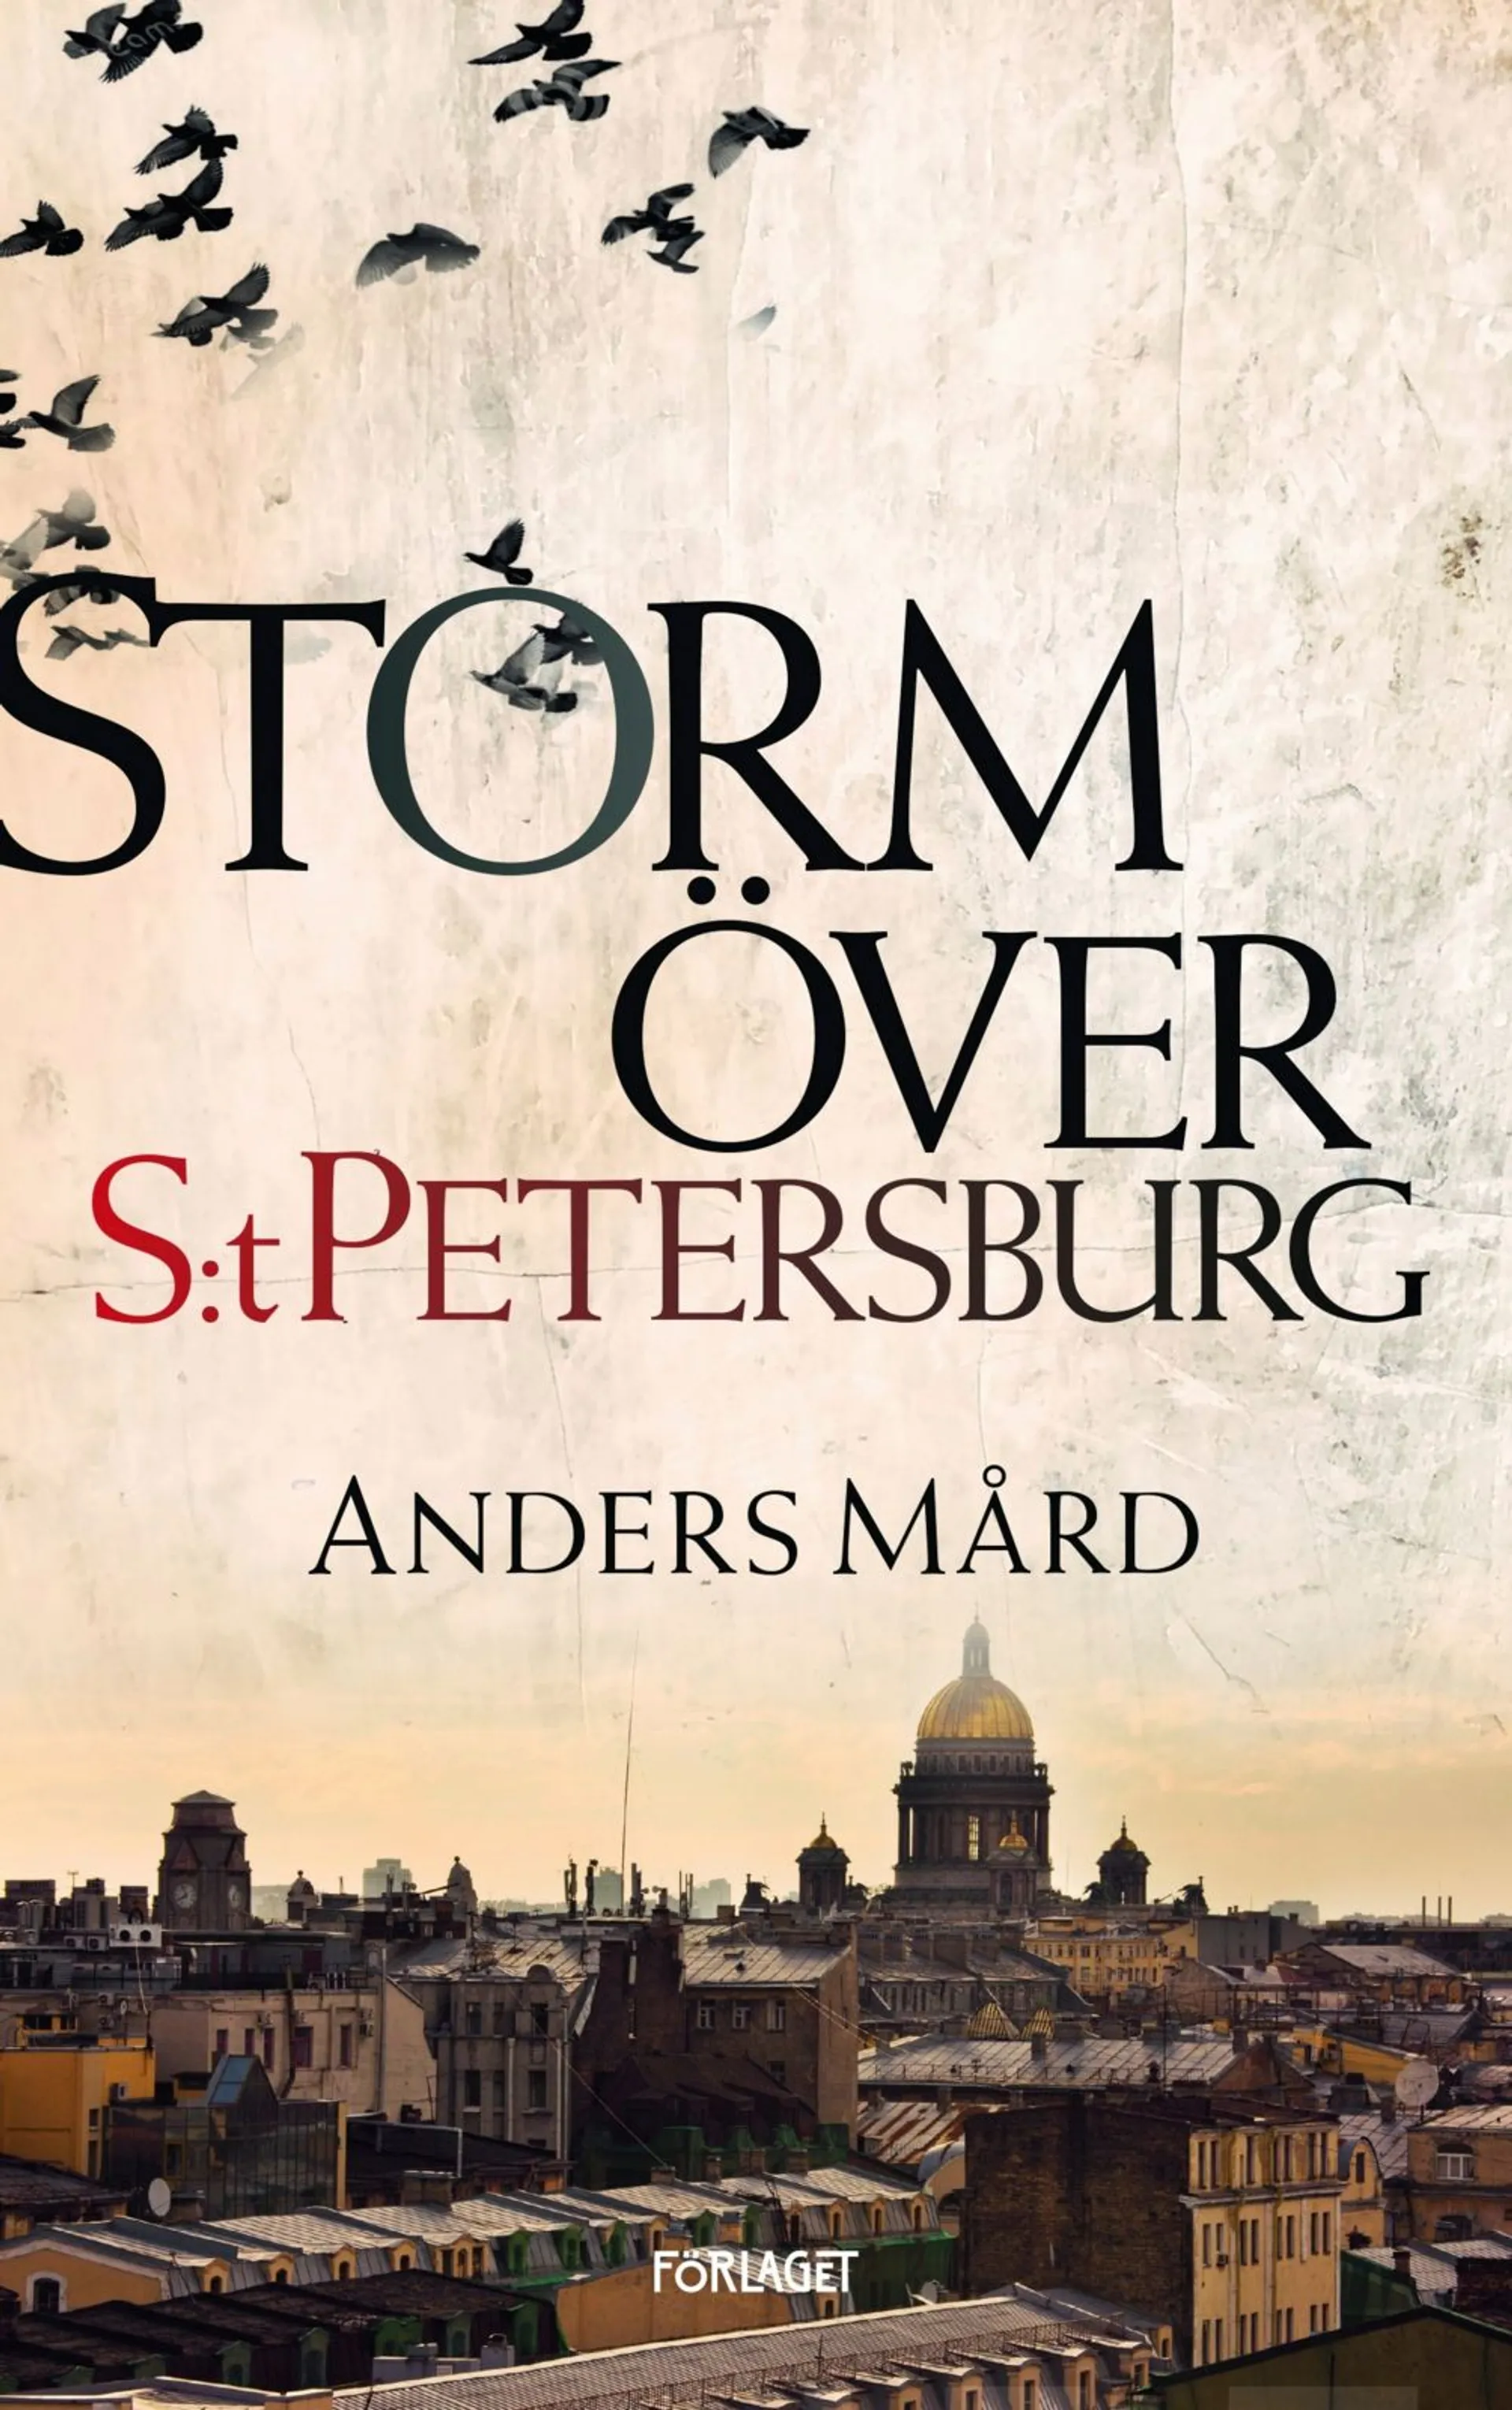 Mård, Storm över S:t Petersburg